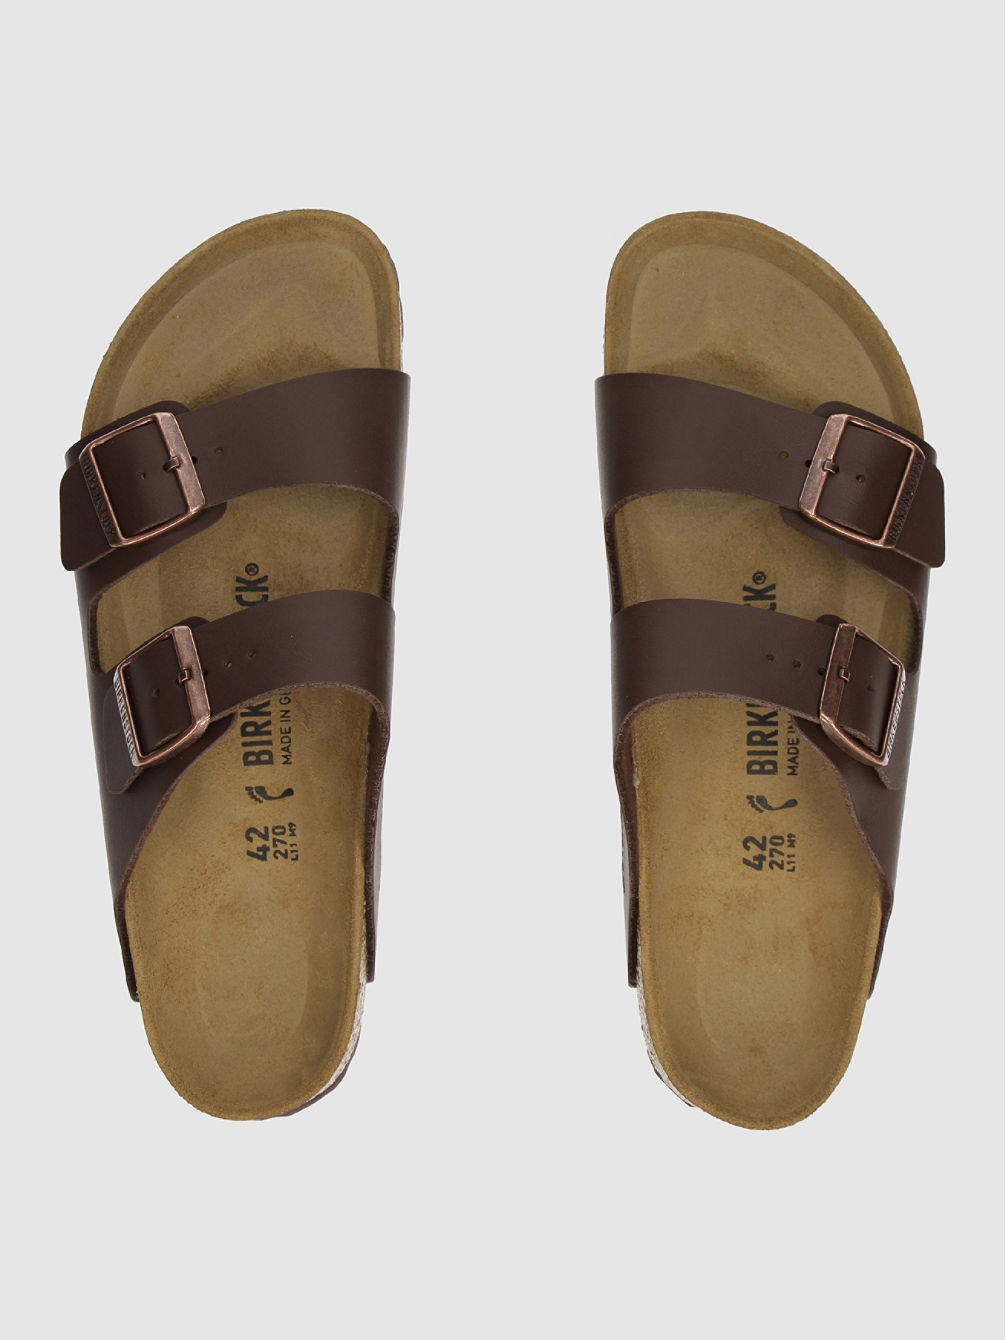 Arizona Sandals